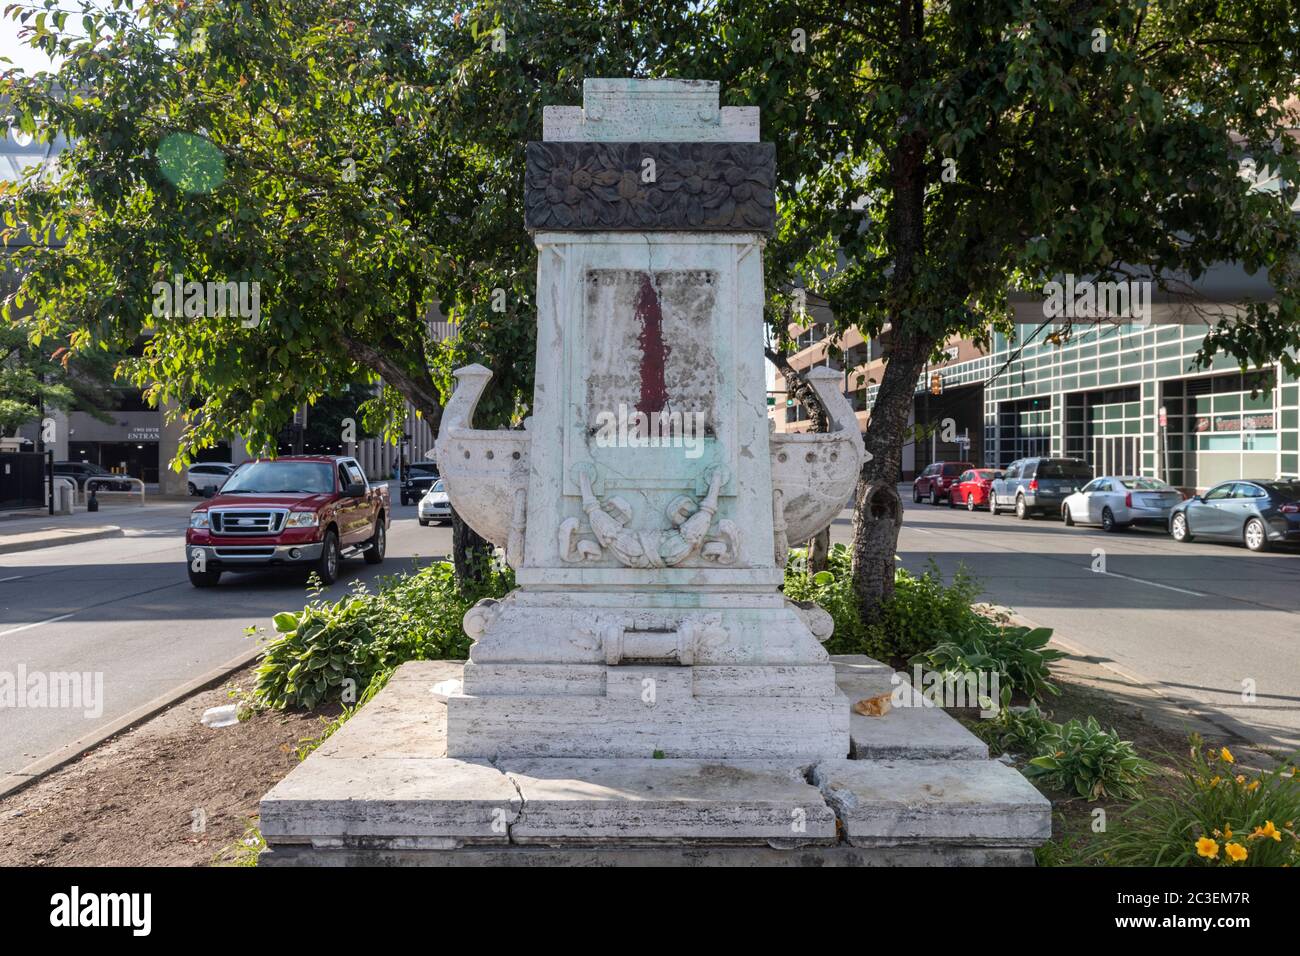 Detroit, Michigan - Stadtarbeiter entfernten eine Statue von Christopher Columbus, die neben Rathaus seit 1910 gestanden hatte. Nur der Sockel bleibt erhalten. Stockfoto